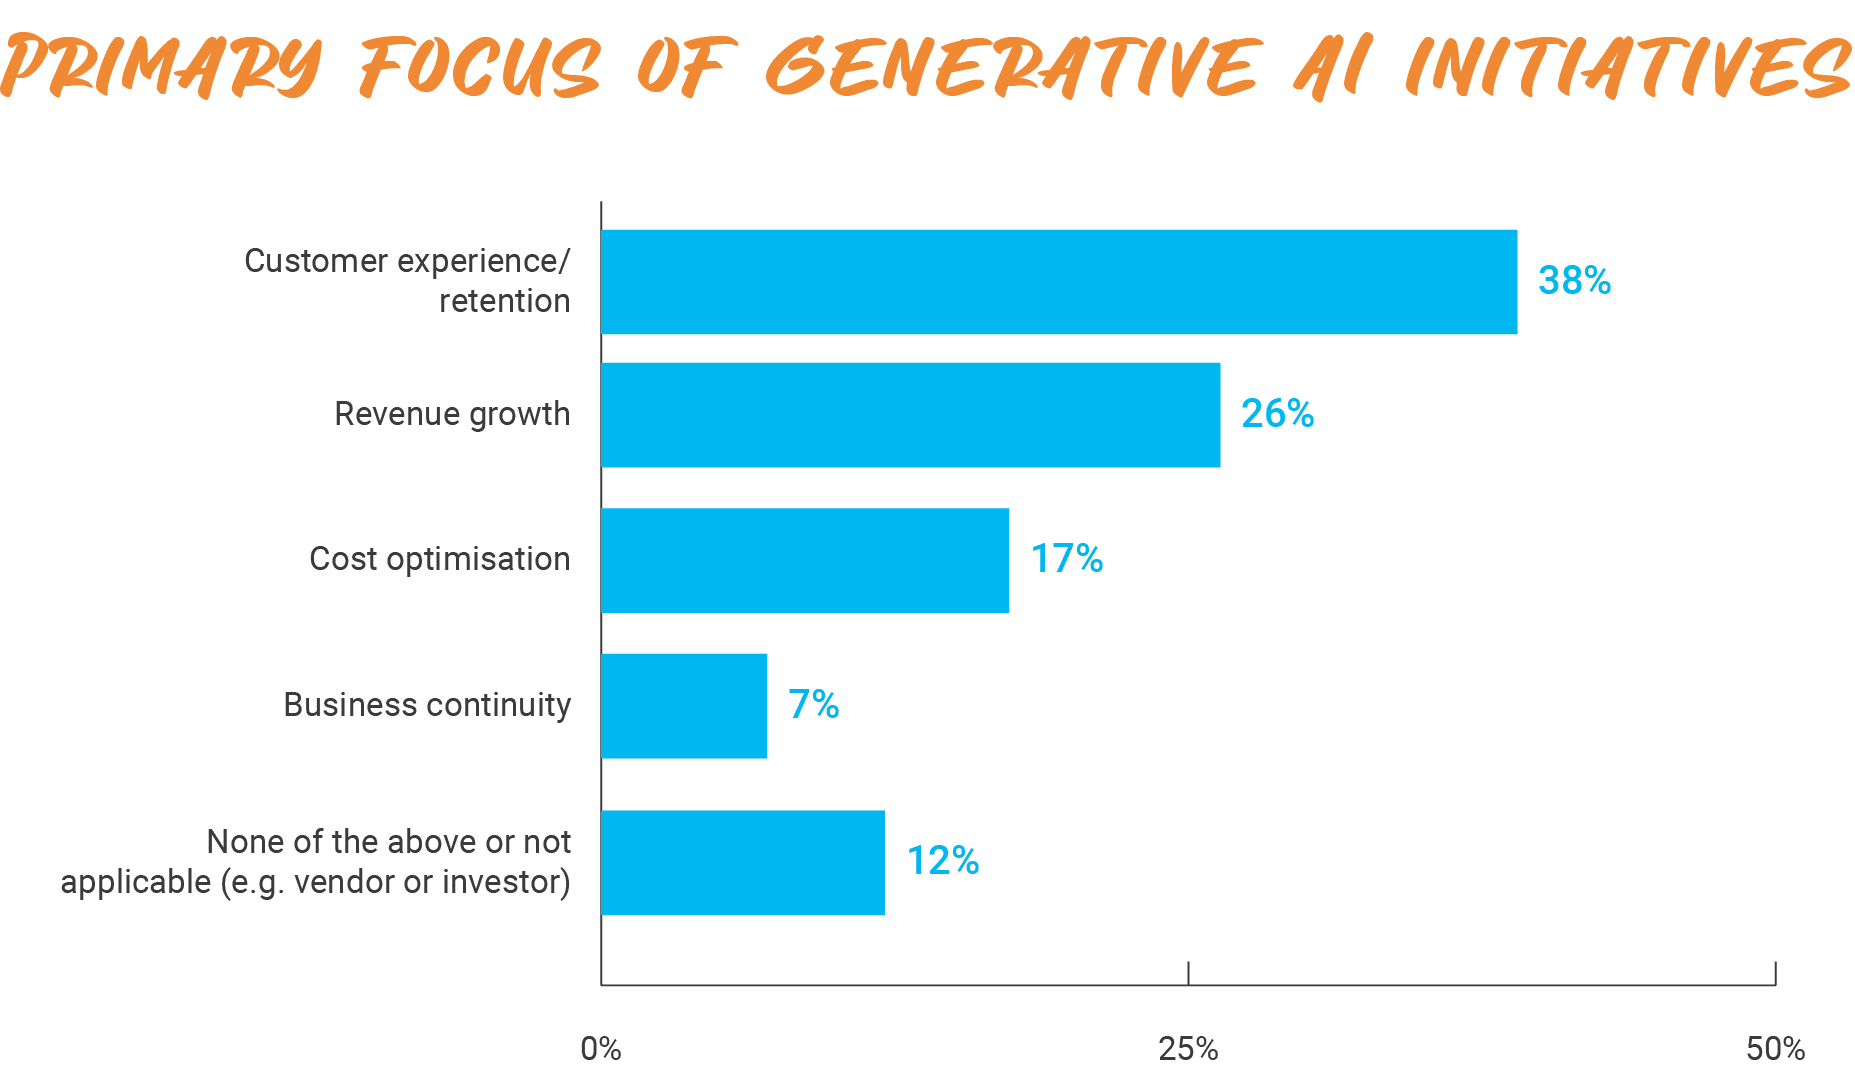 Primary focus of generative AI initiatives